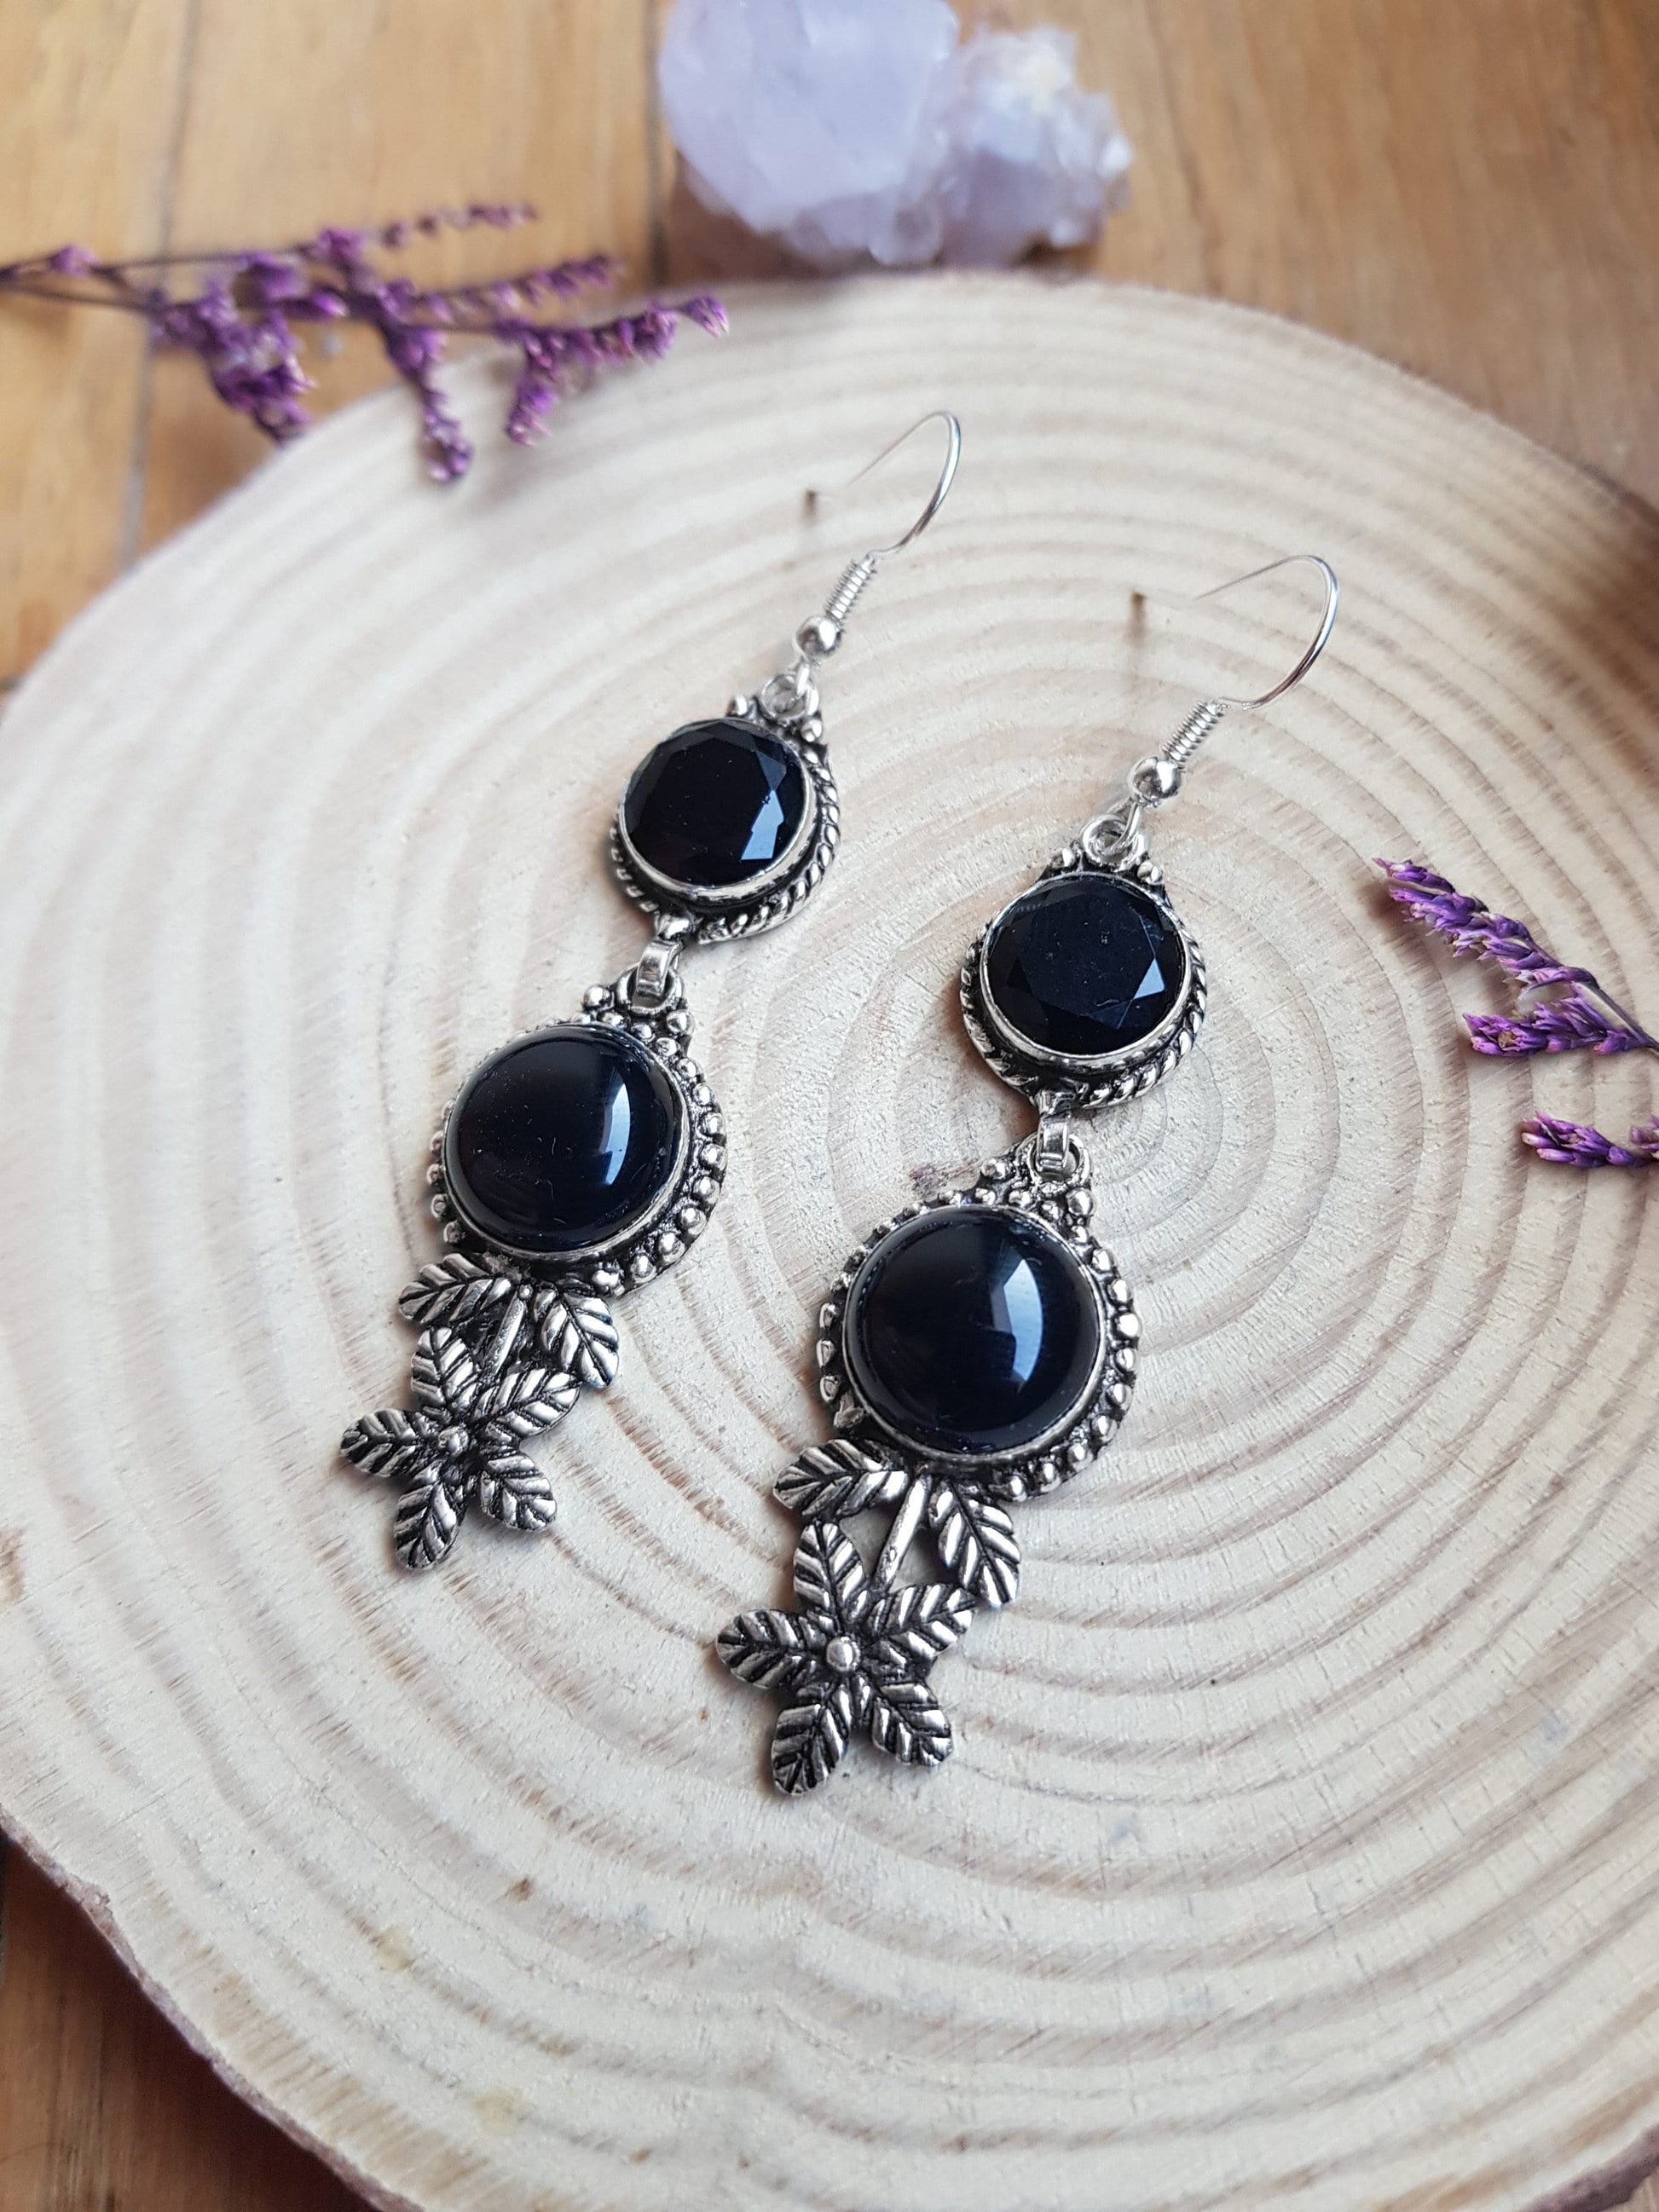 Black Onyx Statement Earrings Dangle Earrings In Sterling Silver Unique Gift For Women GypsyJewelry